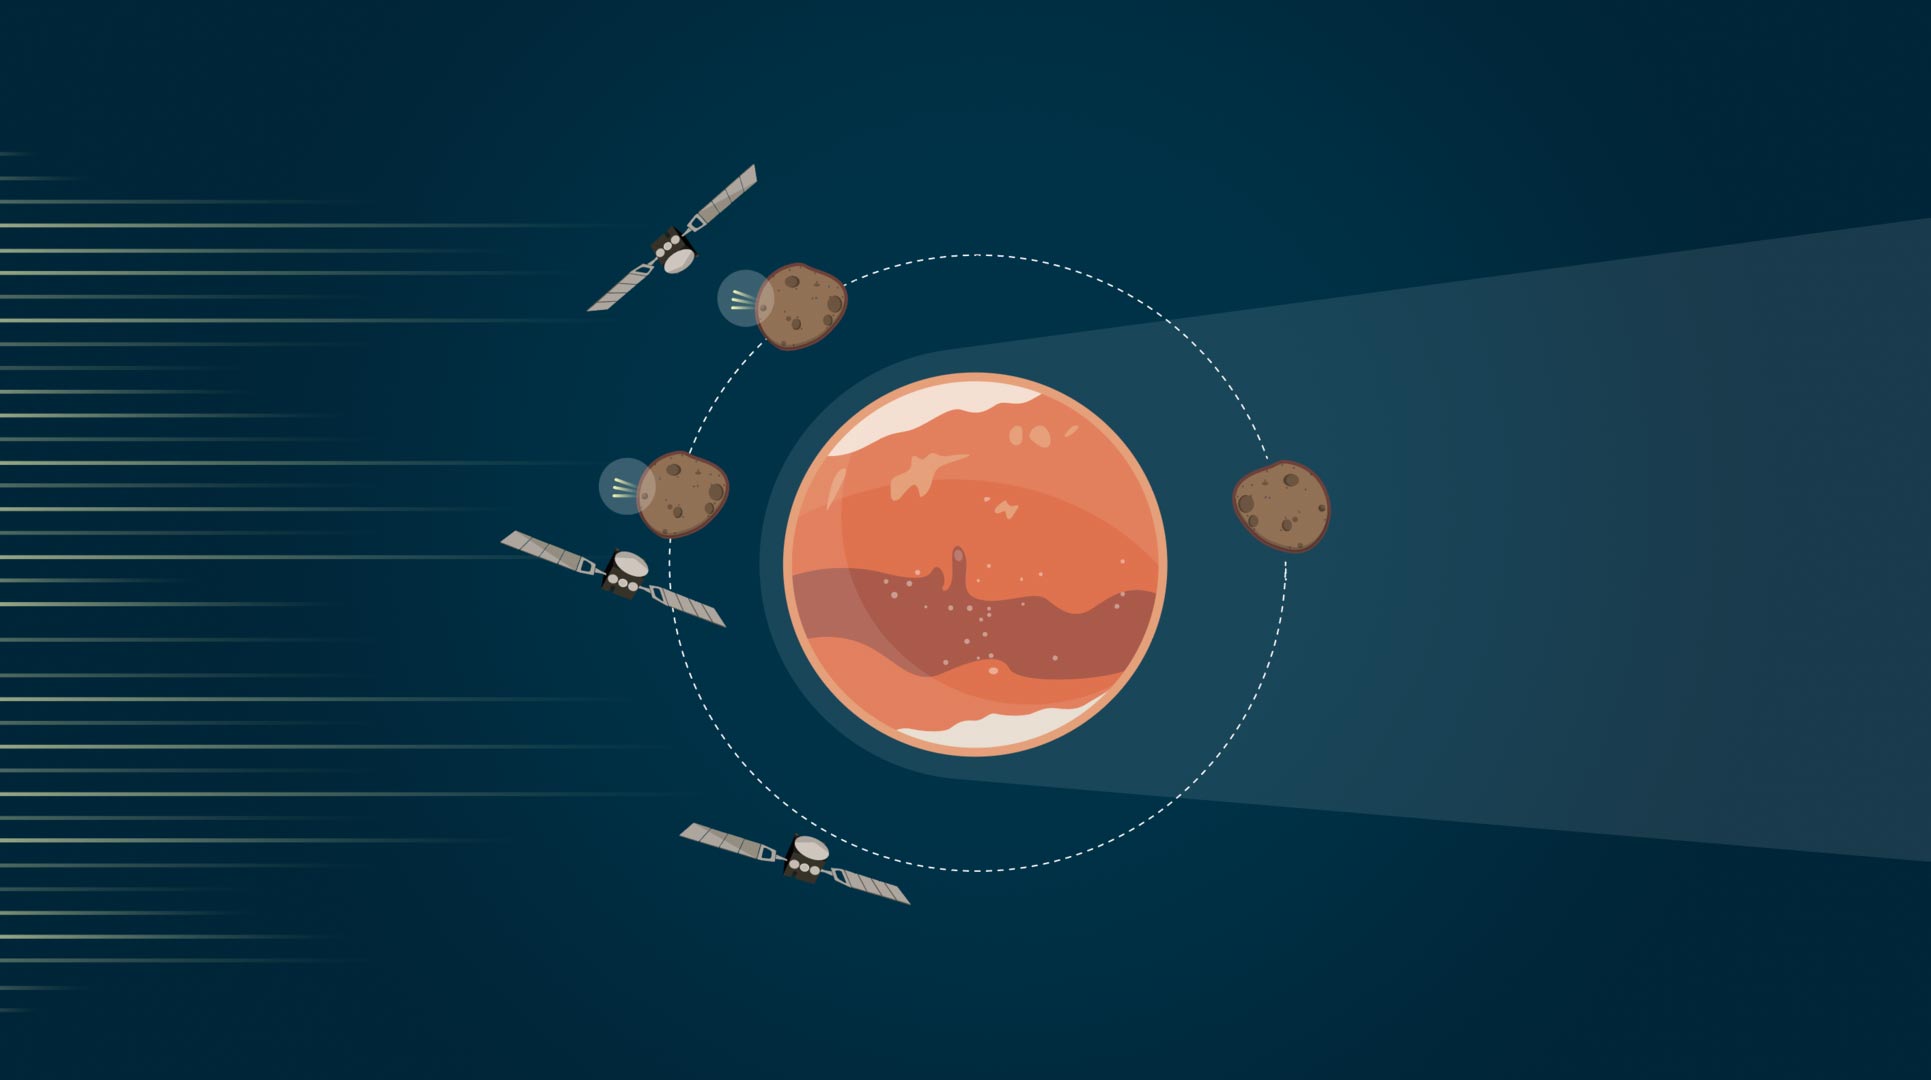 ESA - Mars Express orbiter instruments